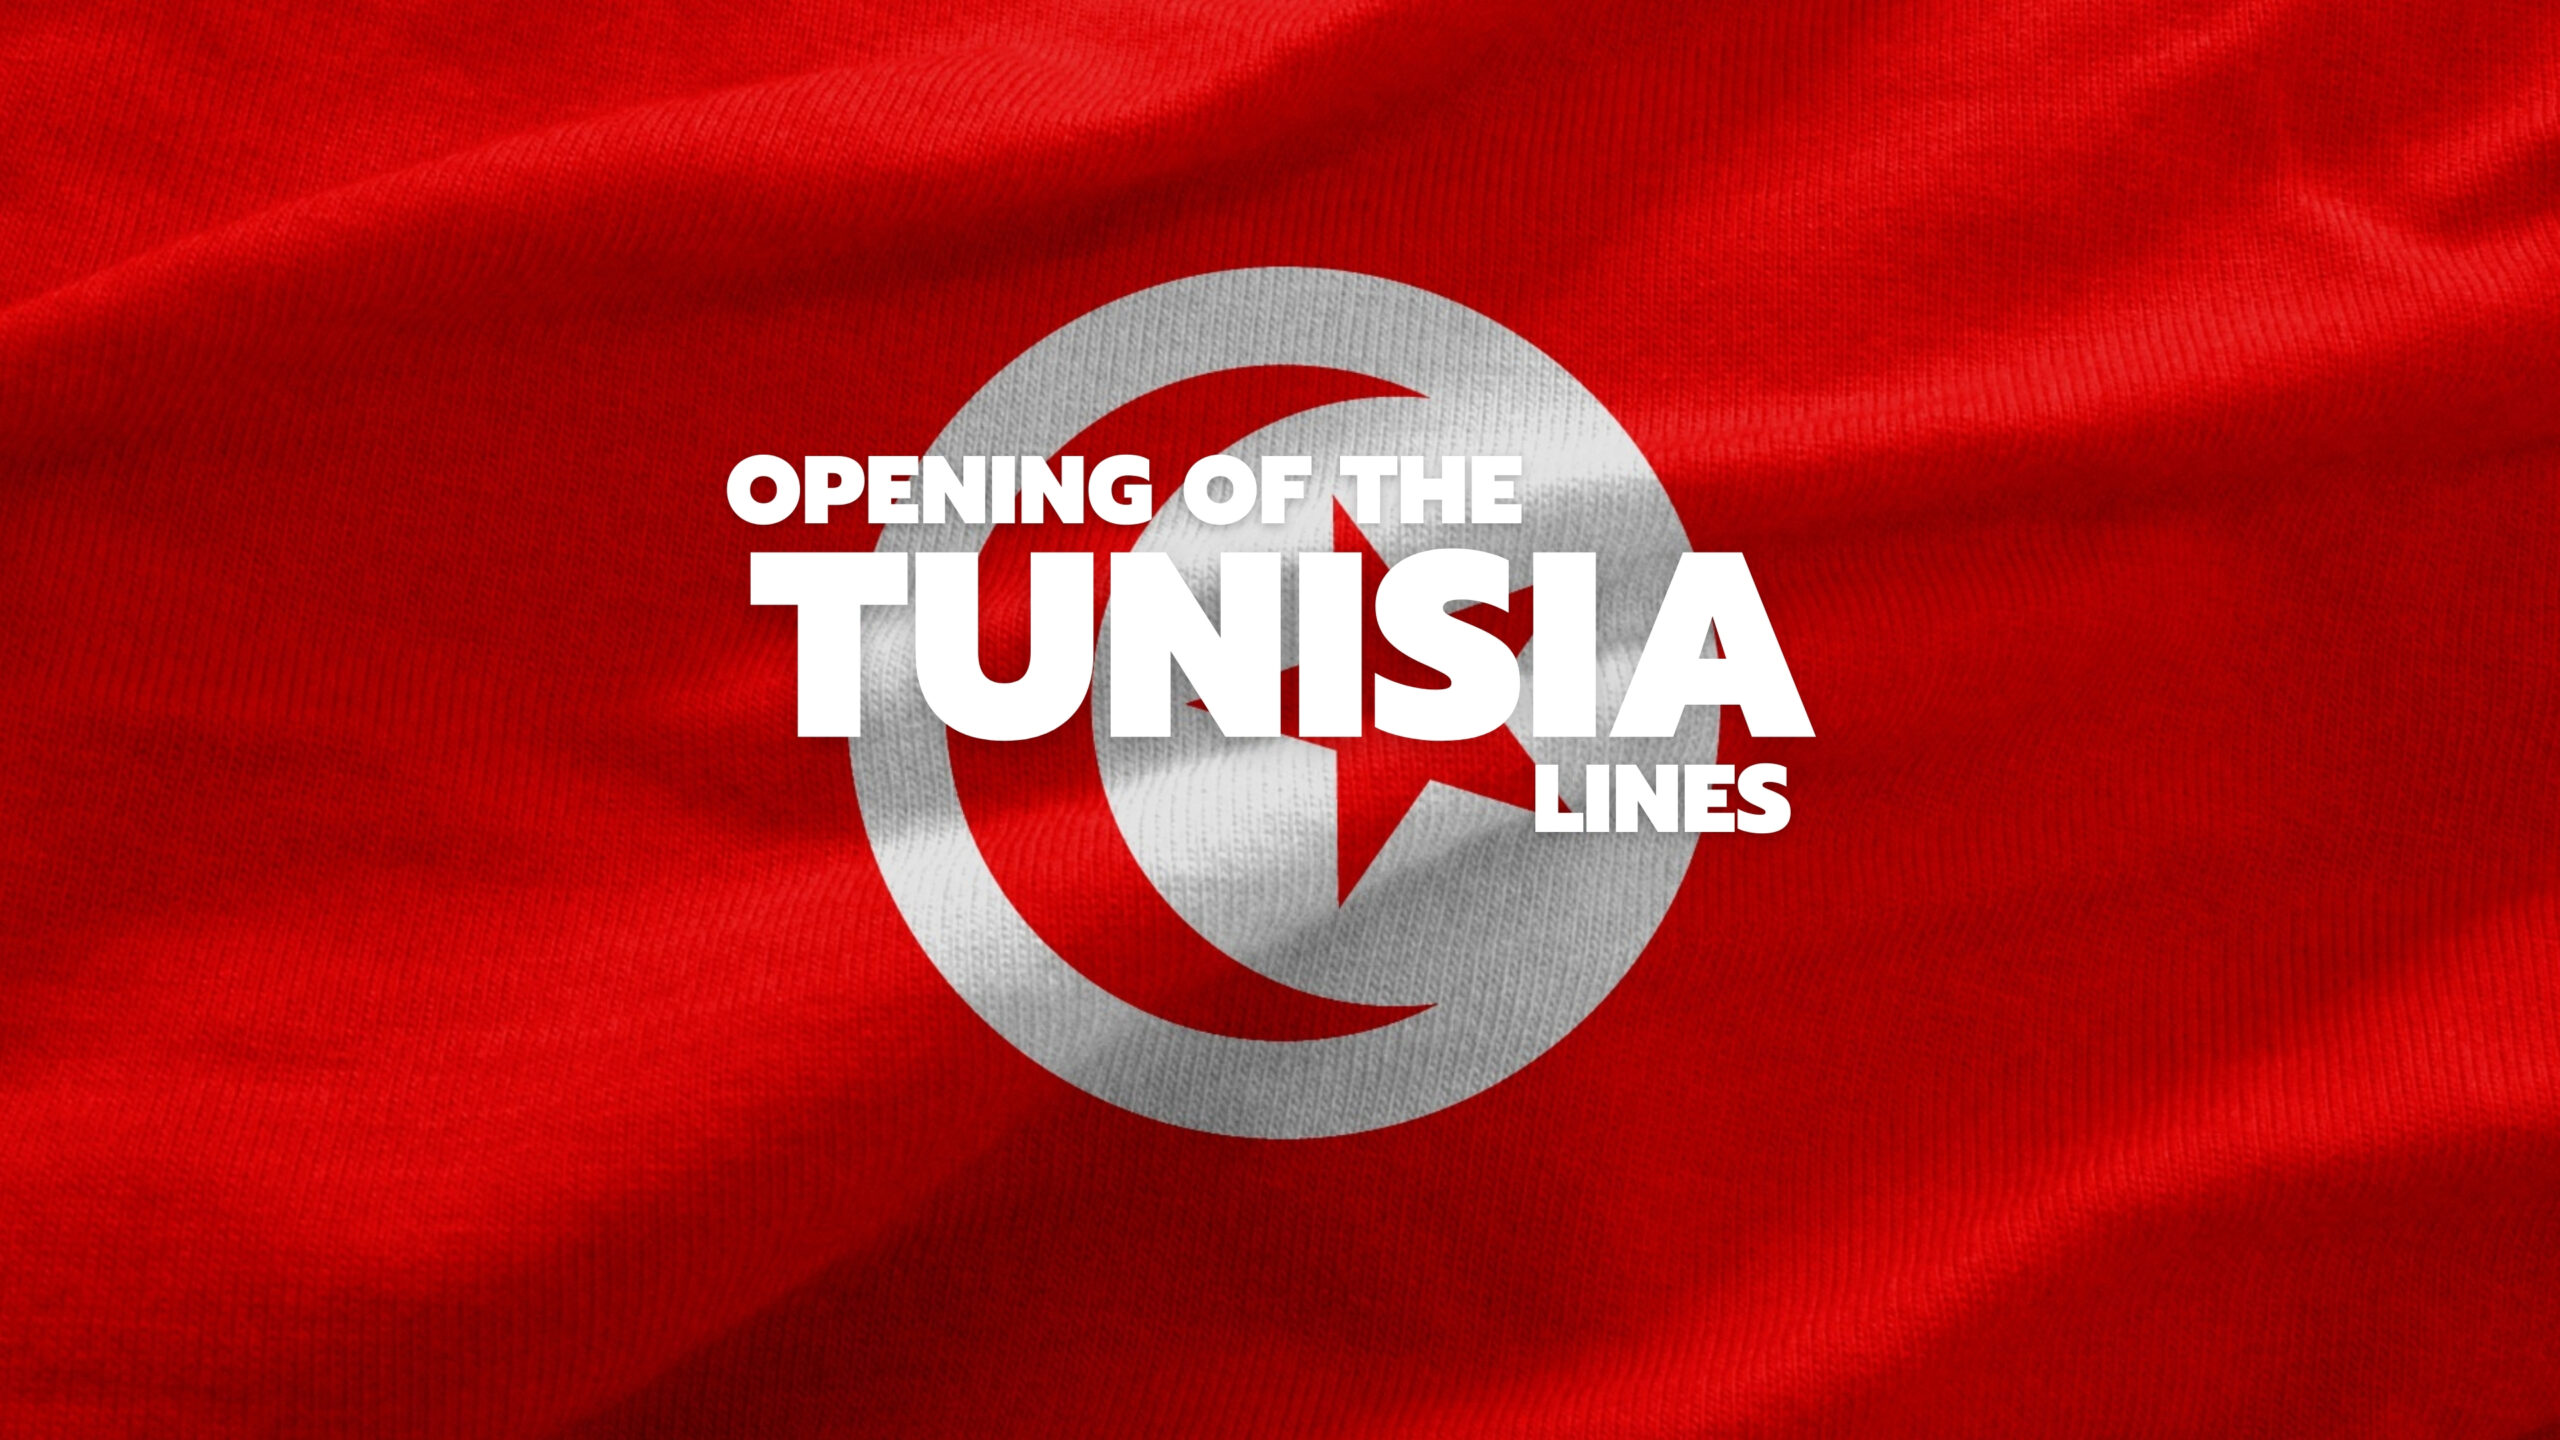 RÉSERVEZ VOTRE PROCHAINE TRAVERSÉE POUR LA TUNISIE !